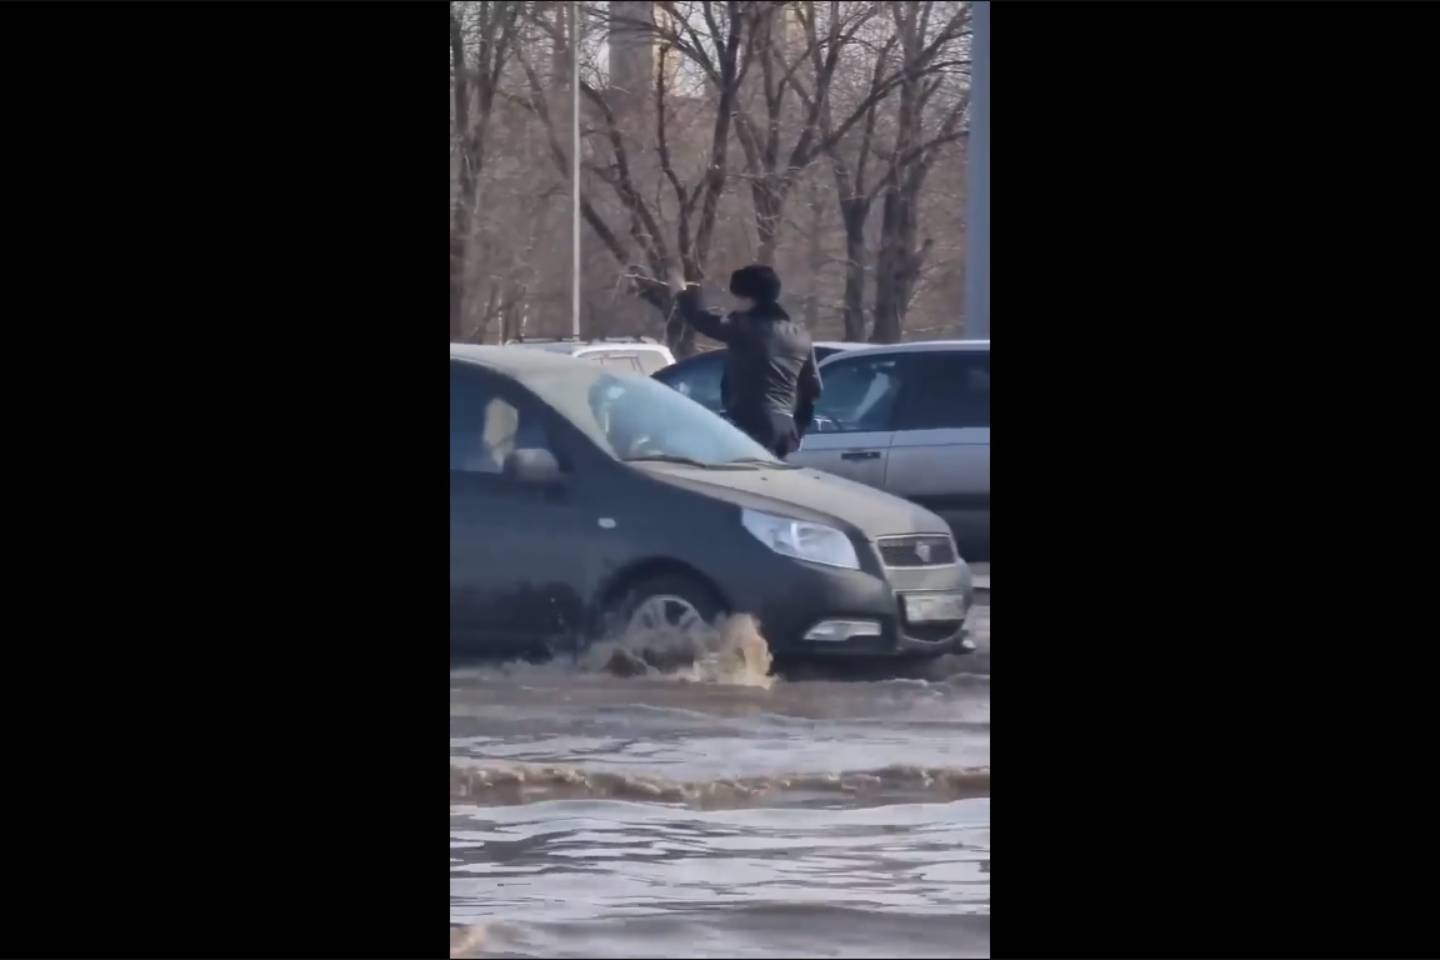 Новости Казахстана / Общество в Казахстане / "Это работа": полицейский регулировал движение на затопленной улице в Караганде